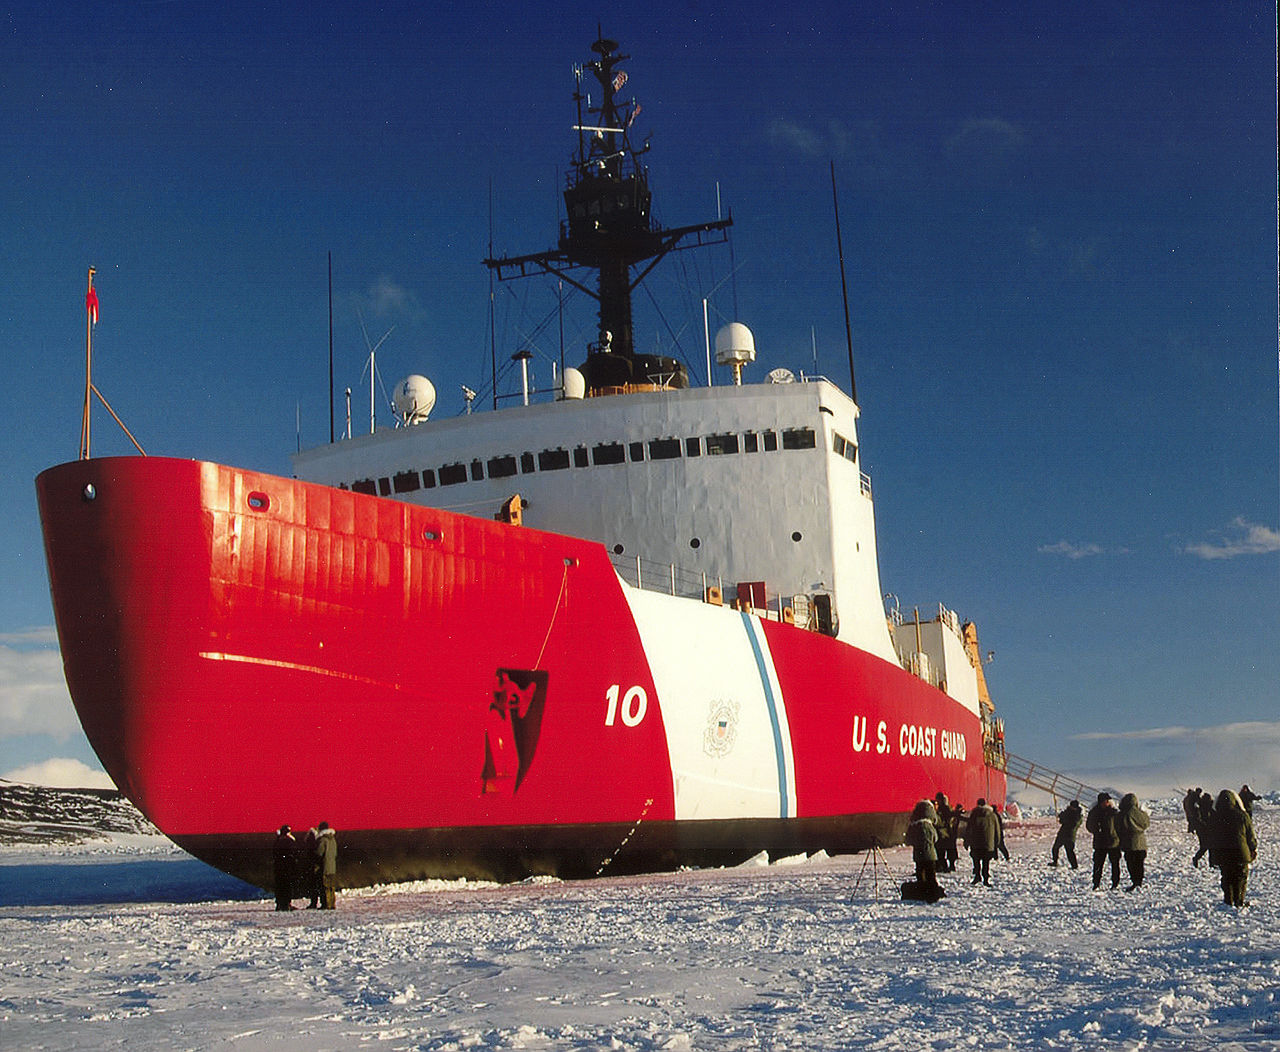 The USCGC Polar Star